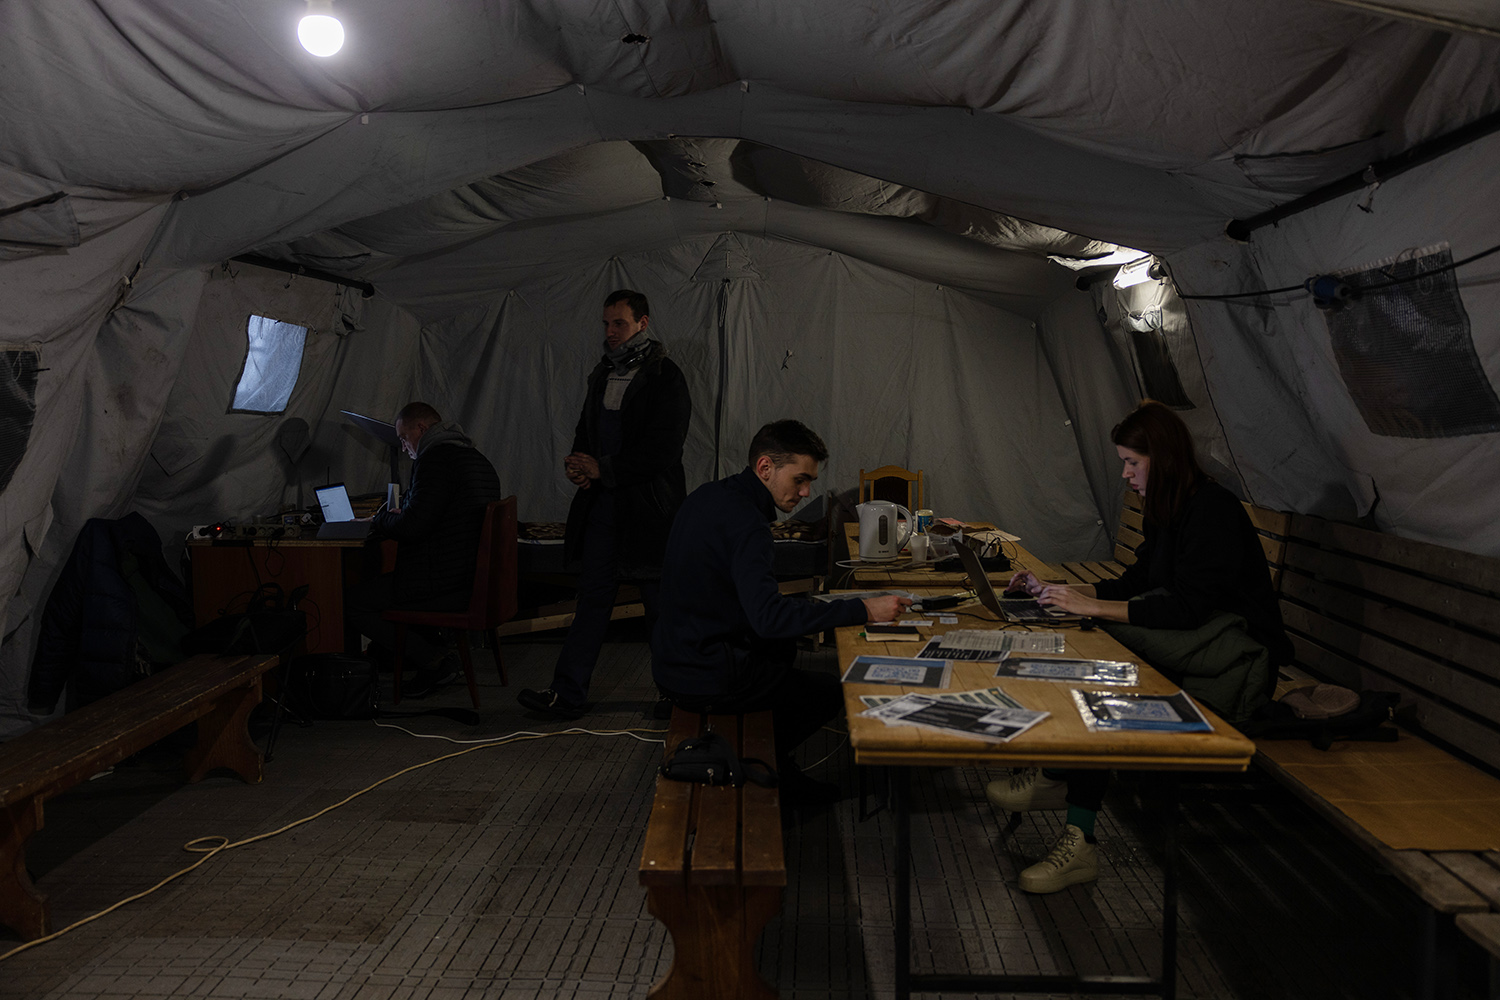 Varias personas se reúnen en tiendas de campaña con calefacción en Kiev el 28 de noviembre. Los refugios temporales están preparados para proporcionar bebidas calientes, electricidad, internet e incluso un lugar donde dormir si es necesario.